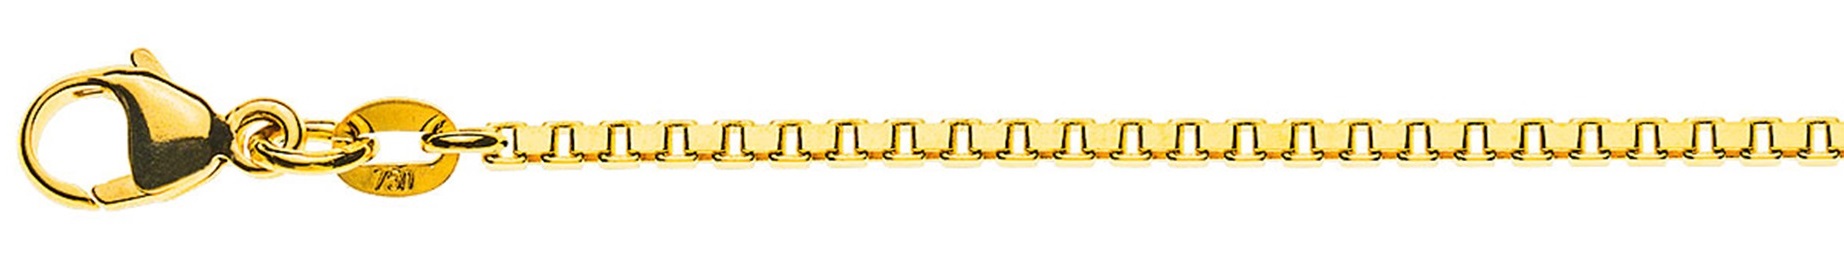 AURONOS Prestige Halskette Gelbgold 18K Venezianerkette diamantiert 50cm 1.6mm